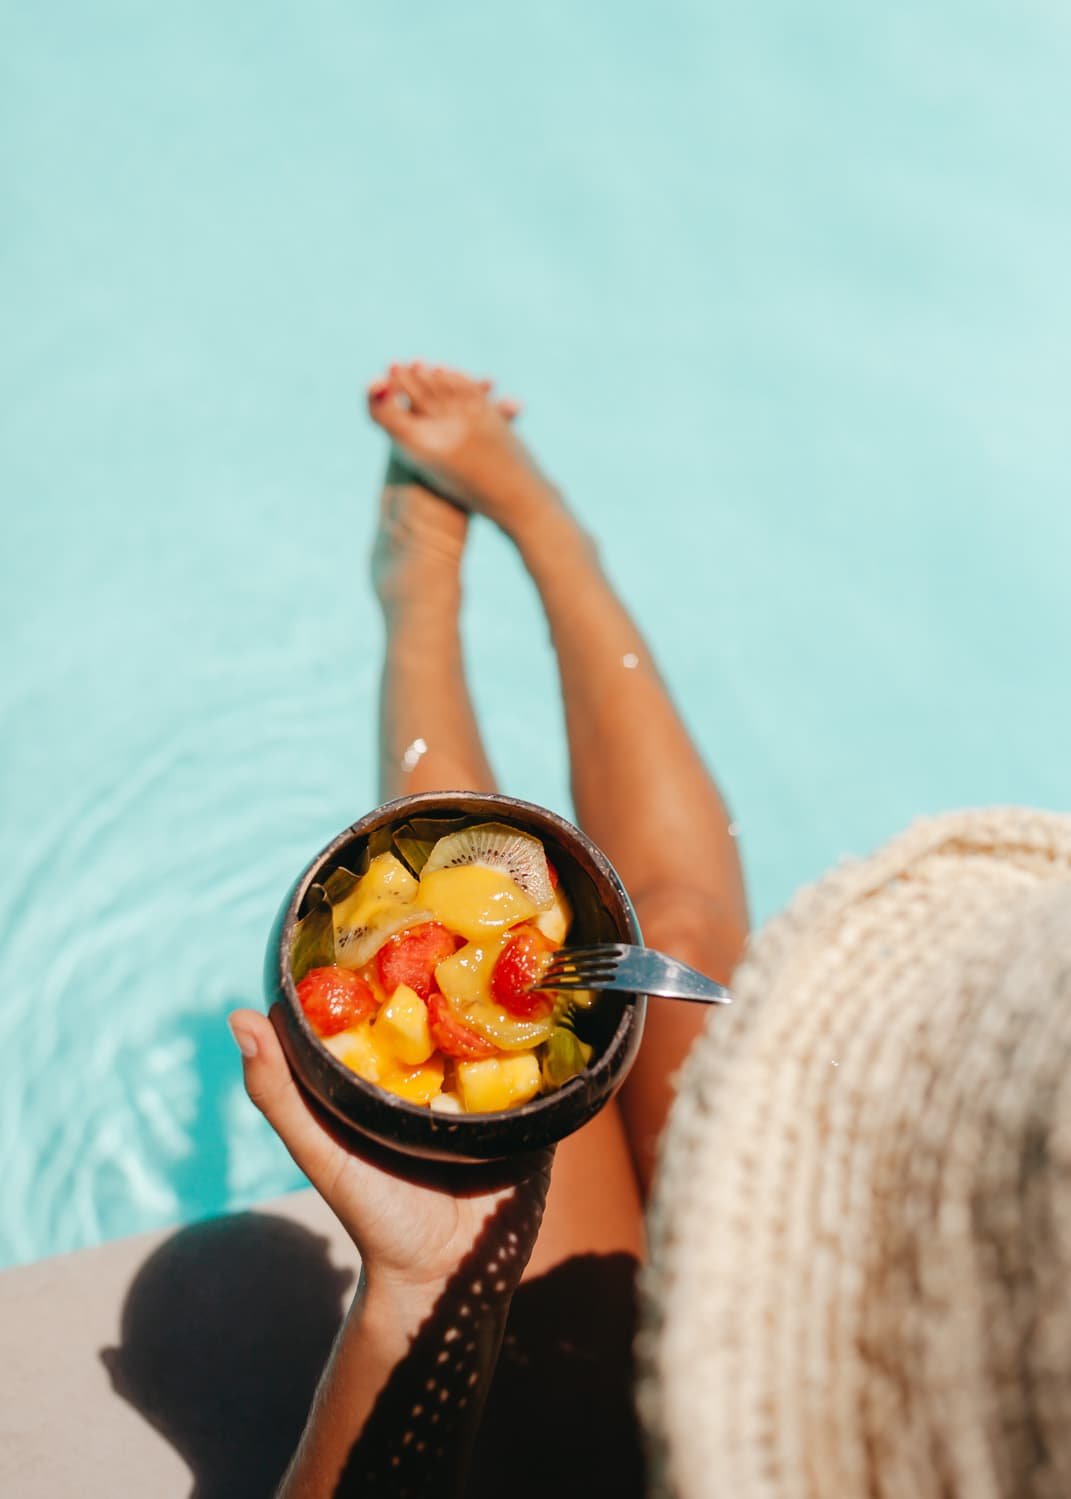 Fotografía profesional de una persona comiendo frutas en una piscina